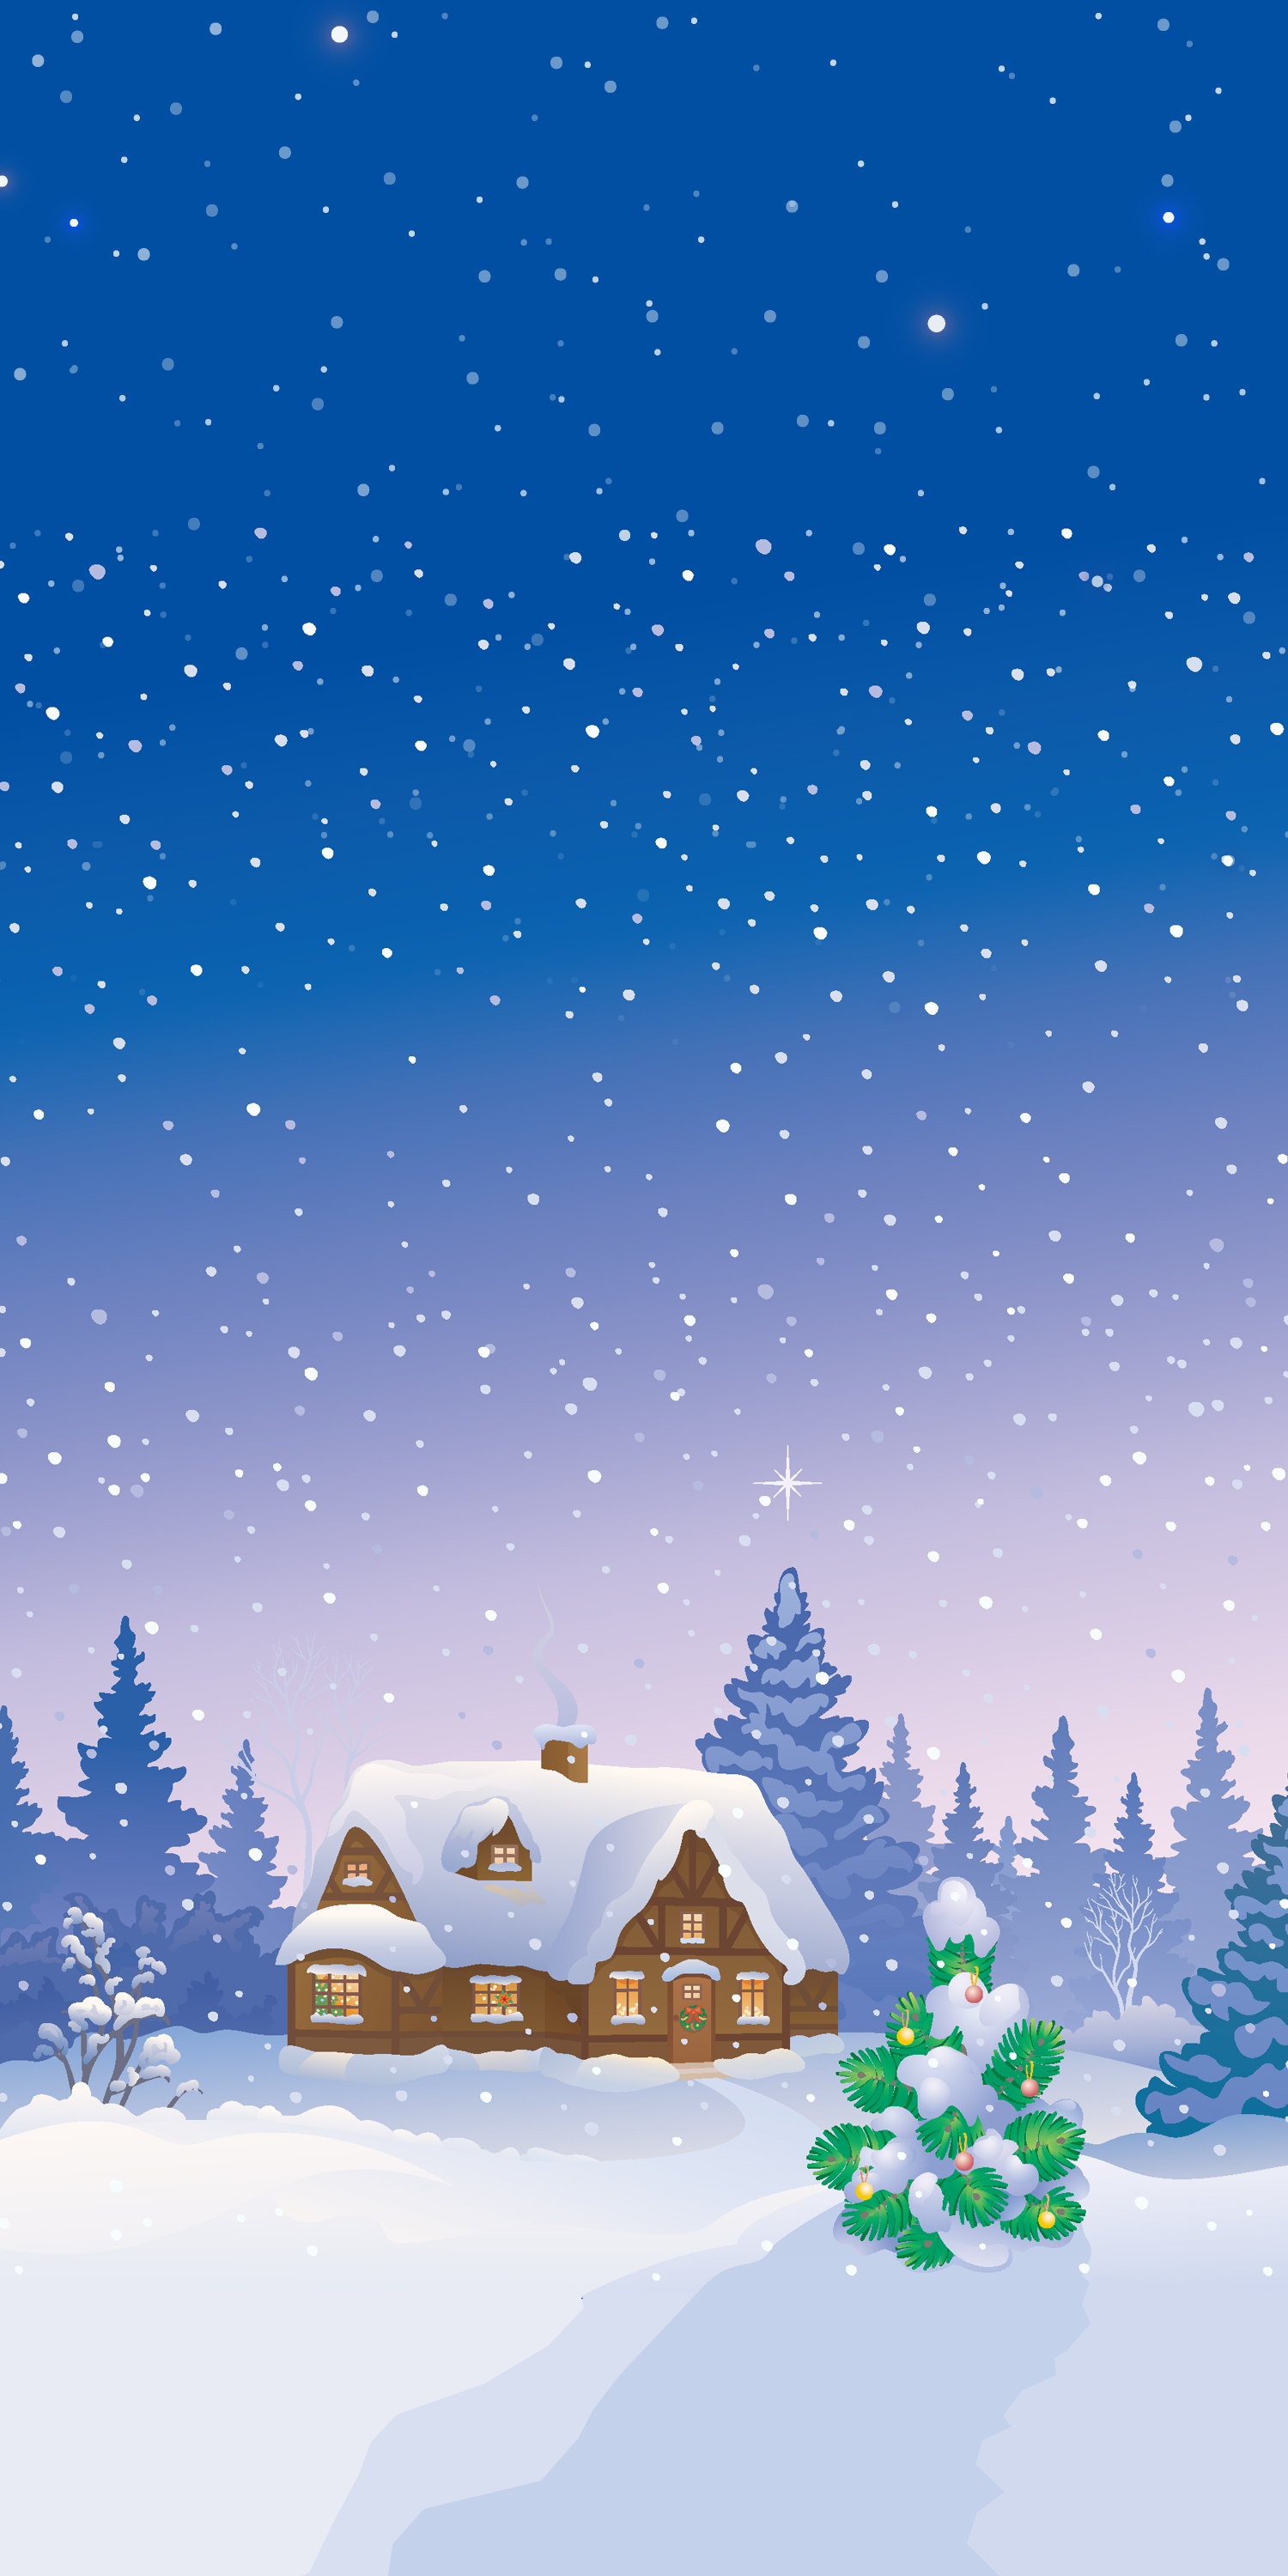 papel pintado de nieve,invierno,cielo,nieve,árbol,nochebuena